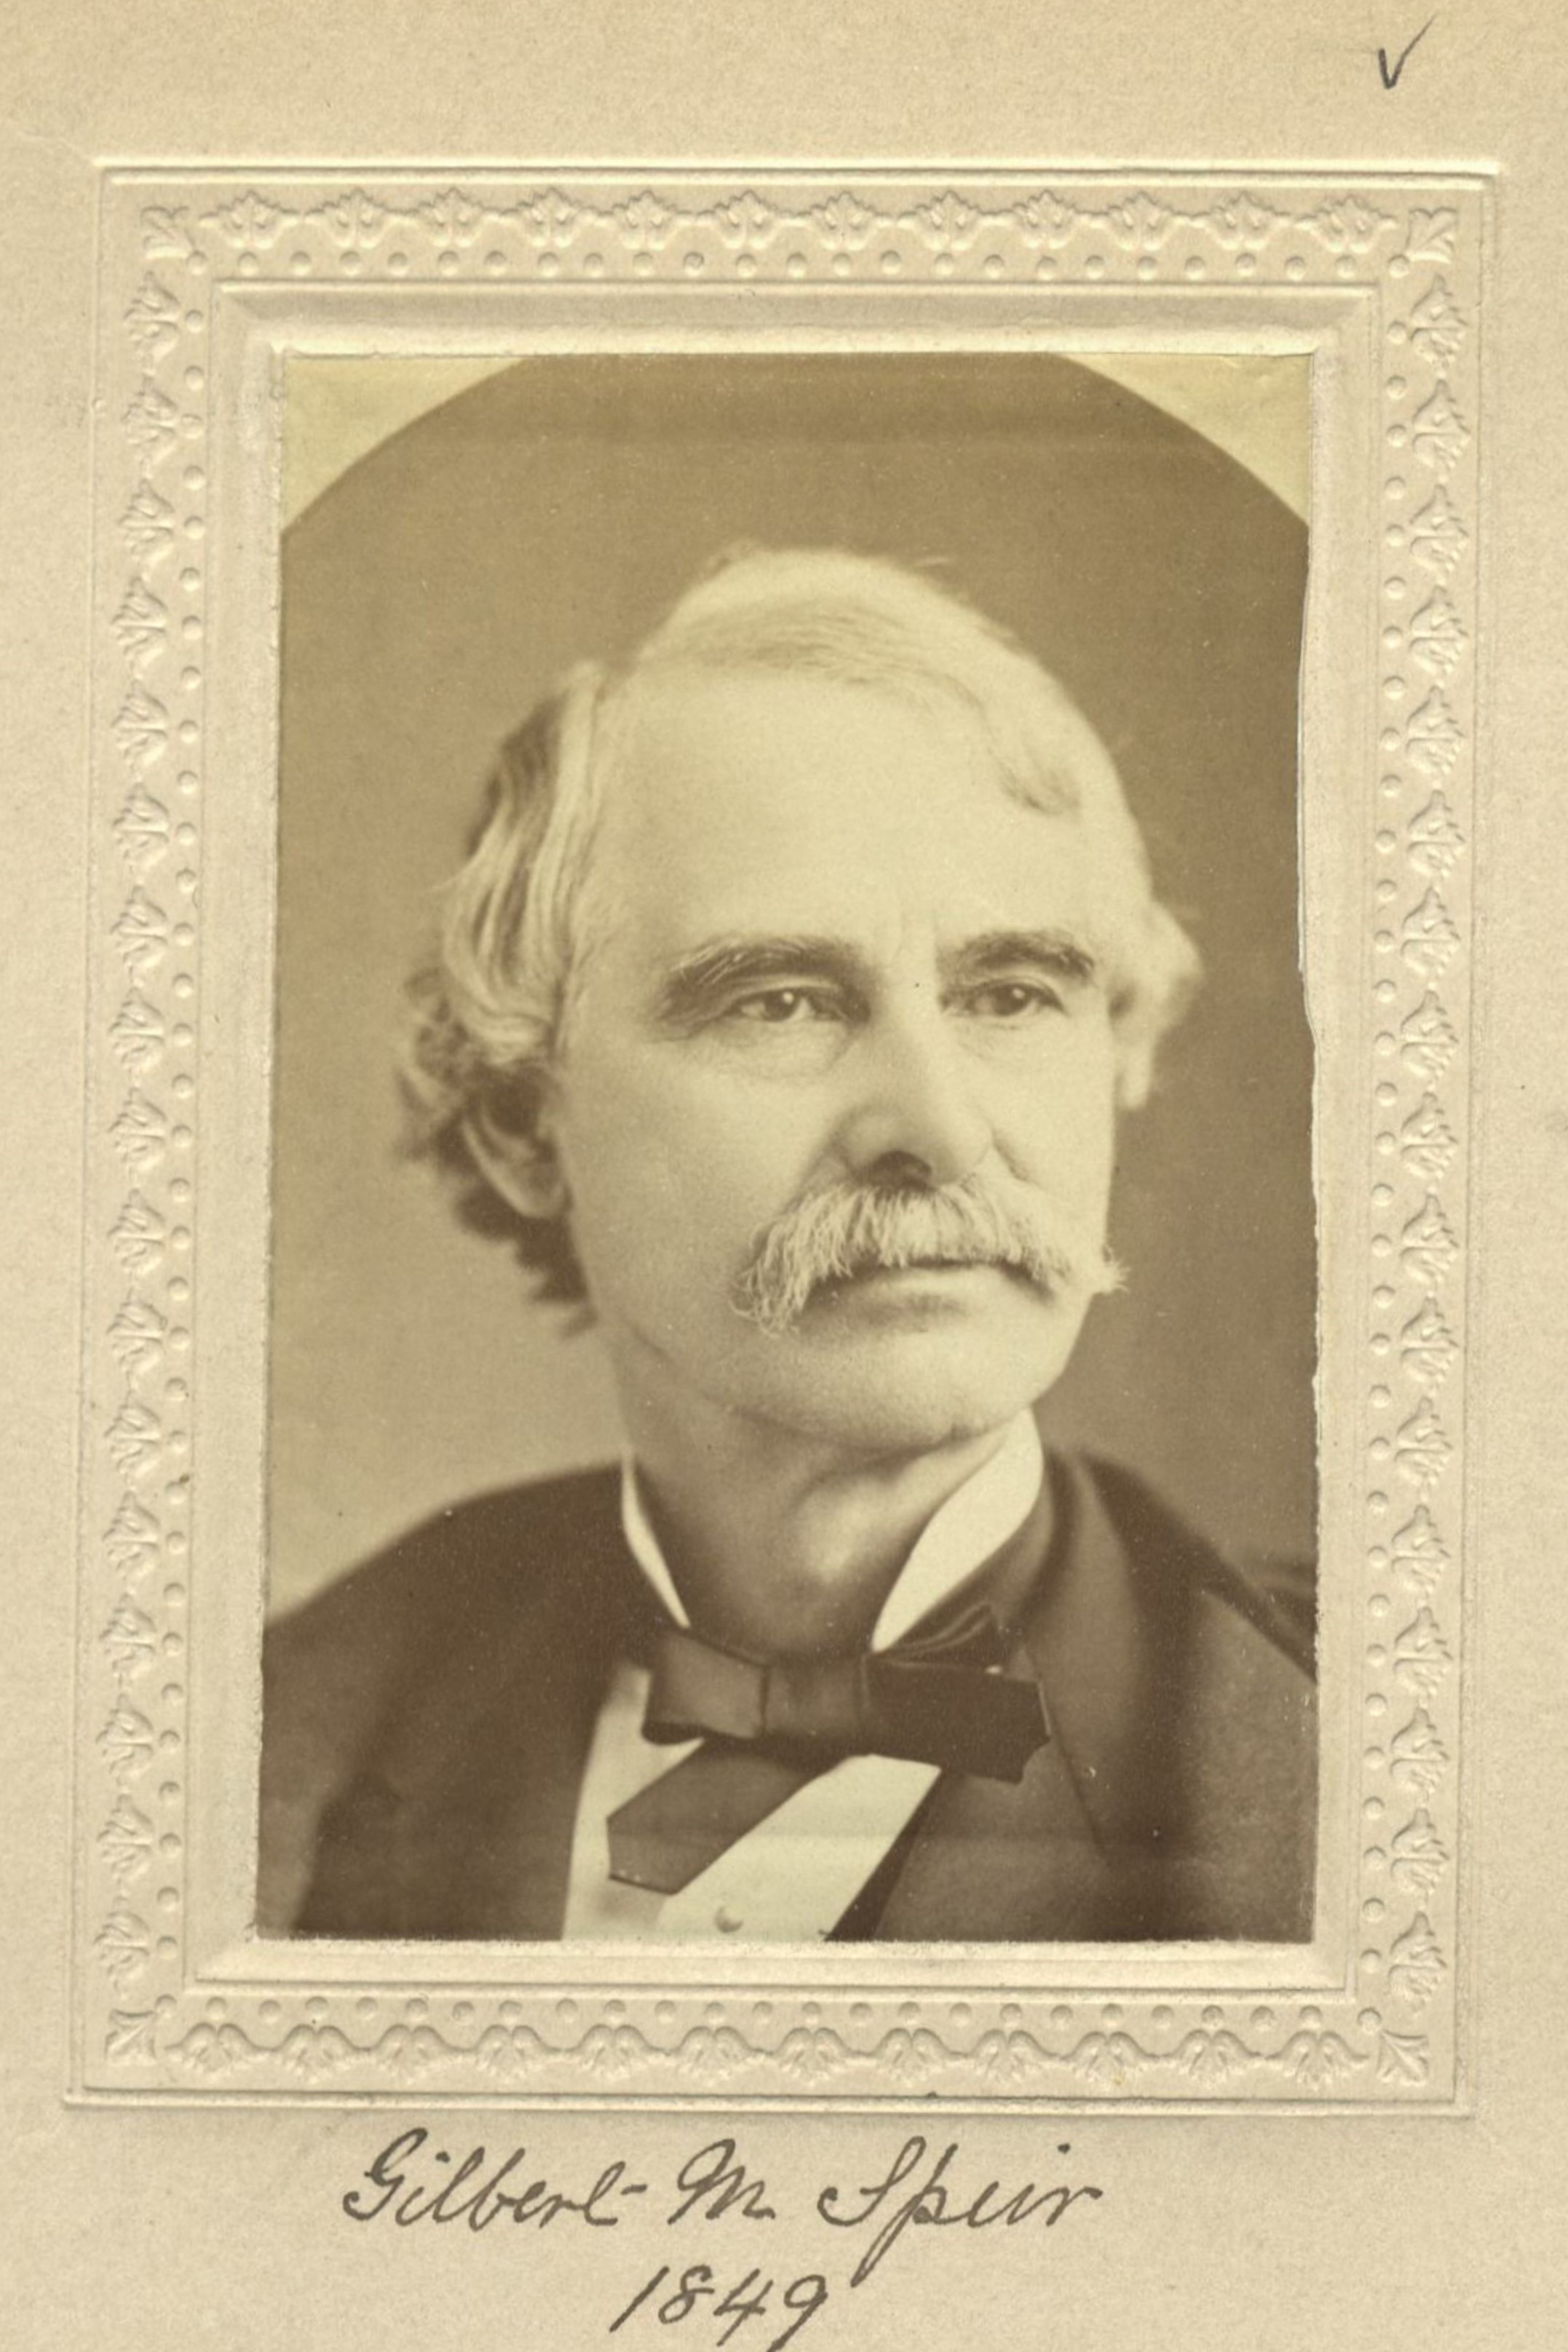 Member portrait of Gilbert M. Speir